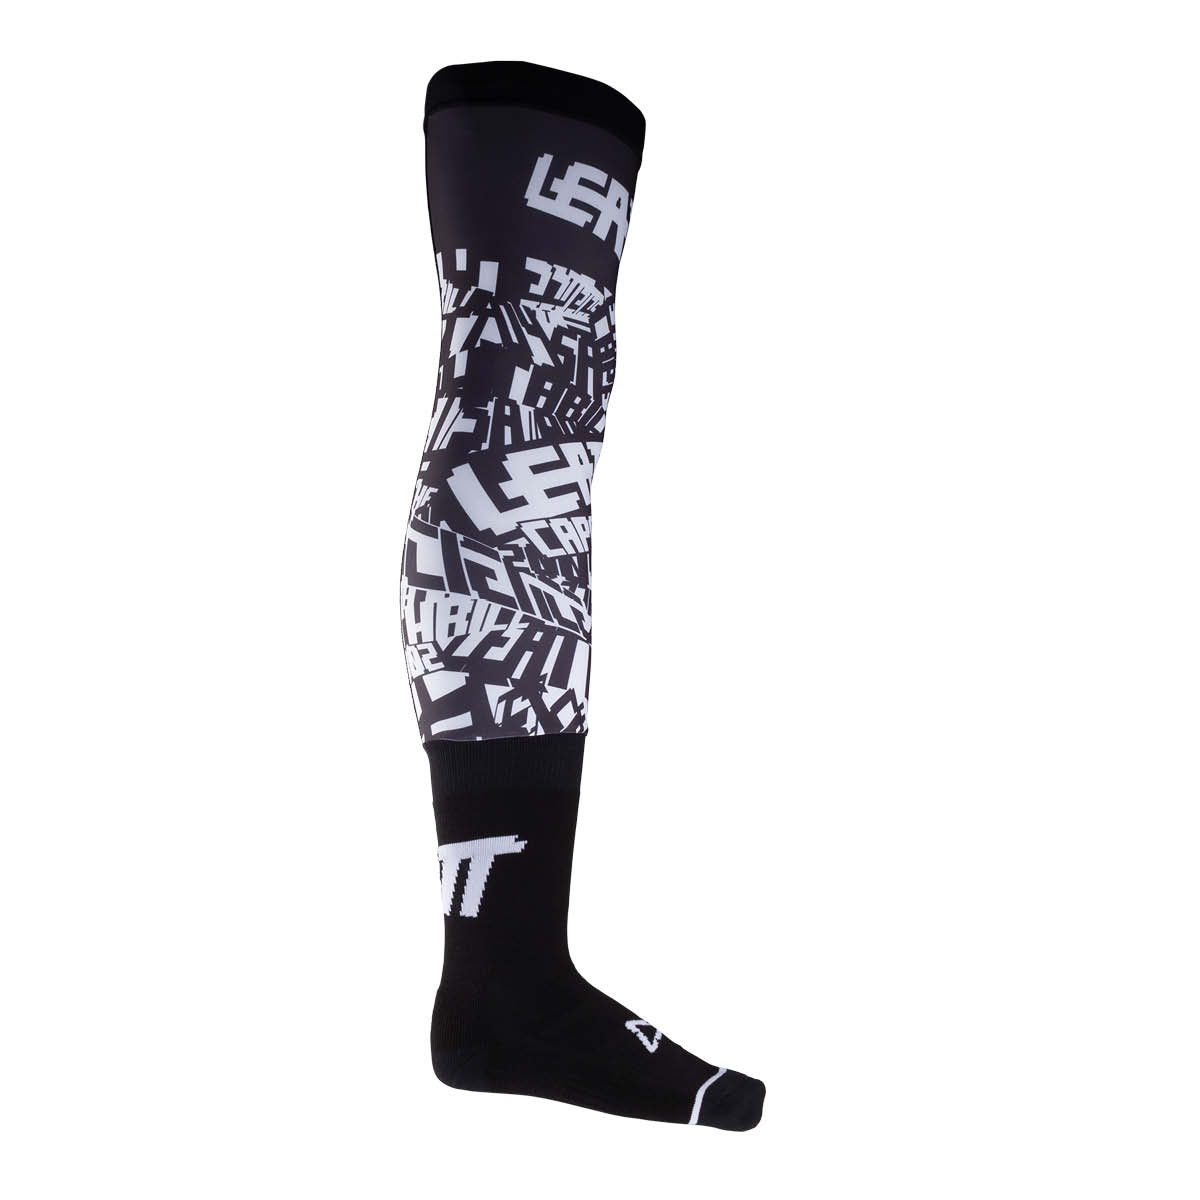 Leatt Knee Brace Socks, schwarz/weiss